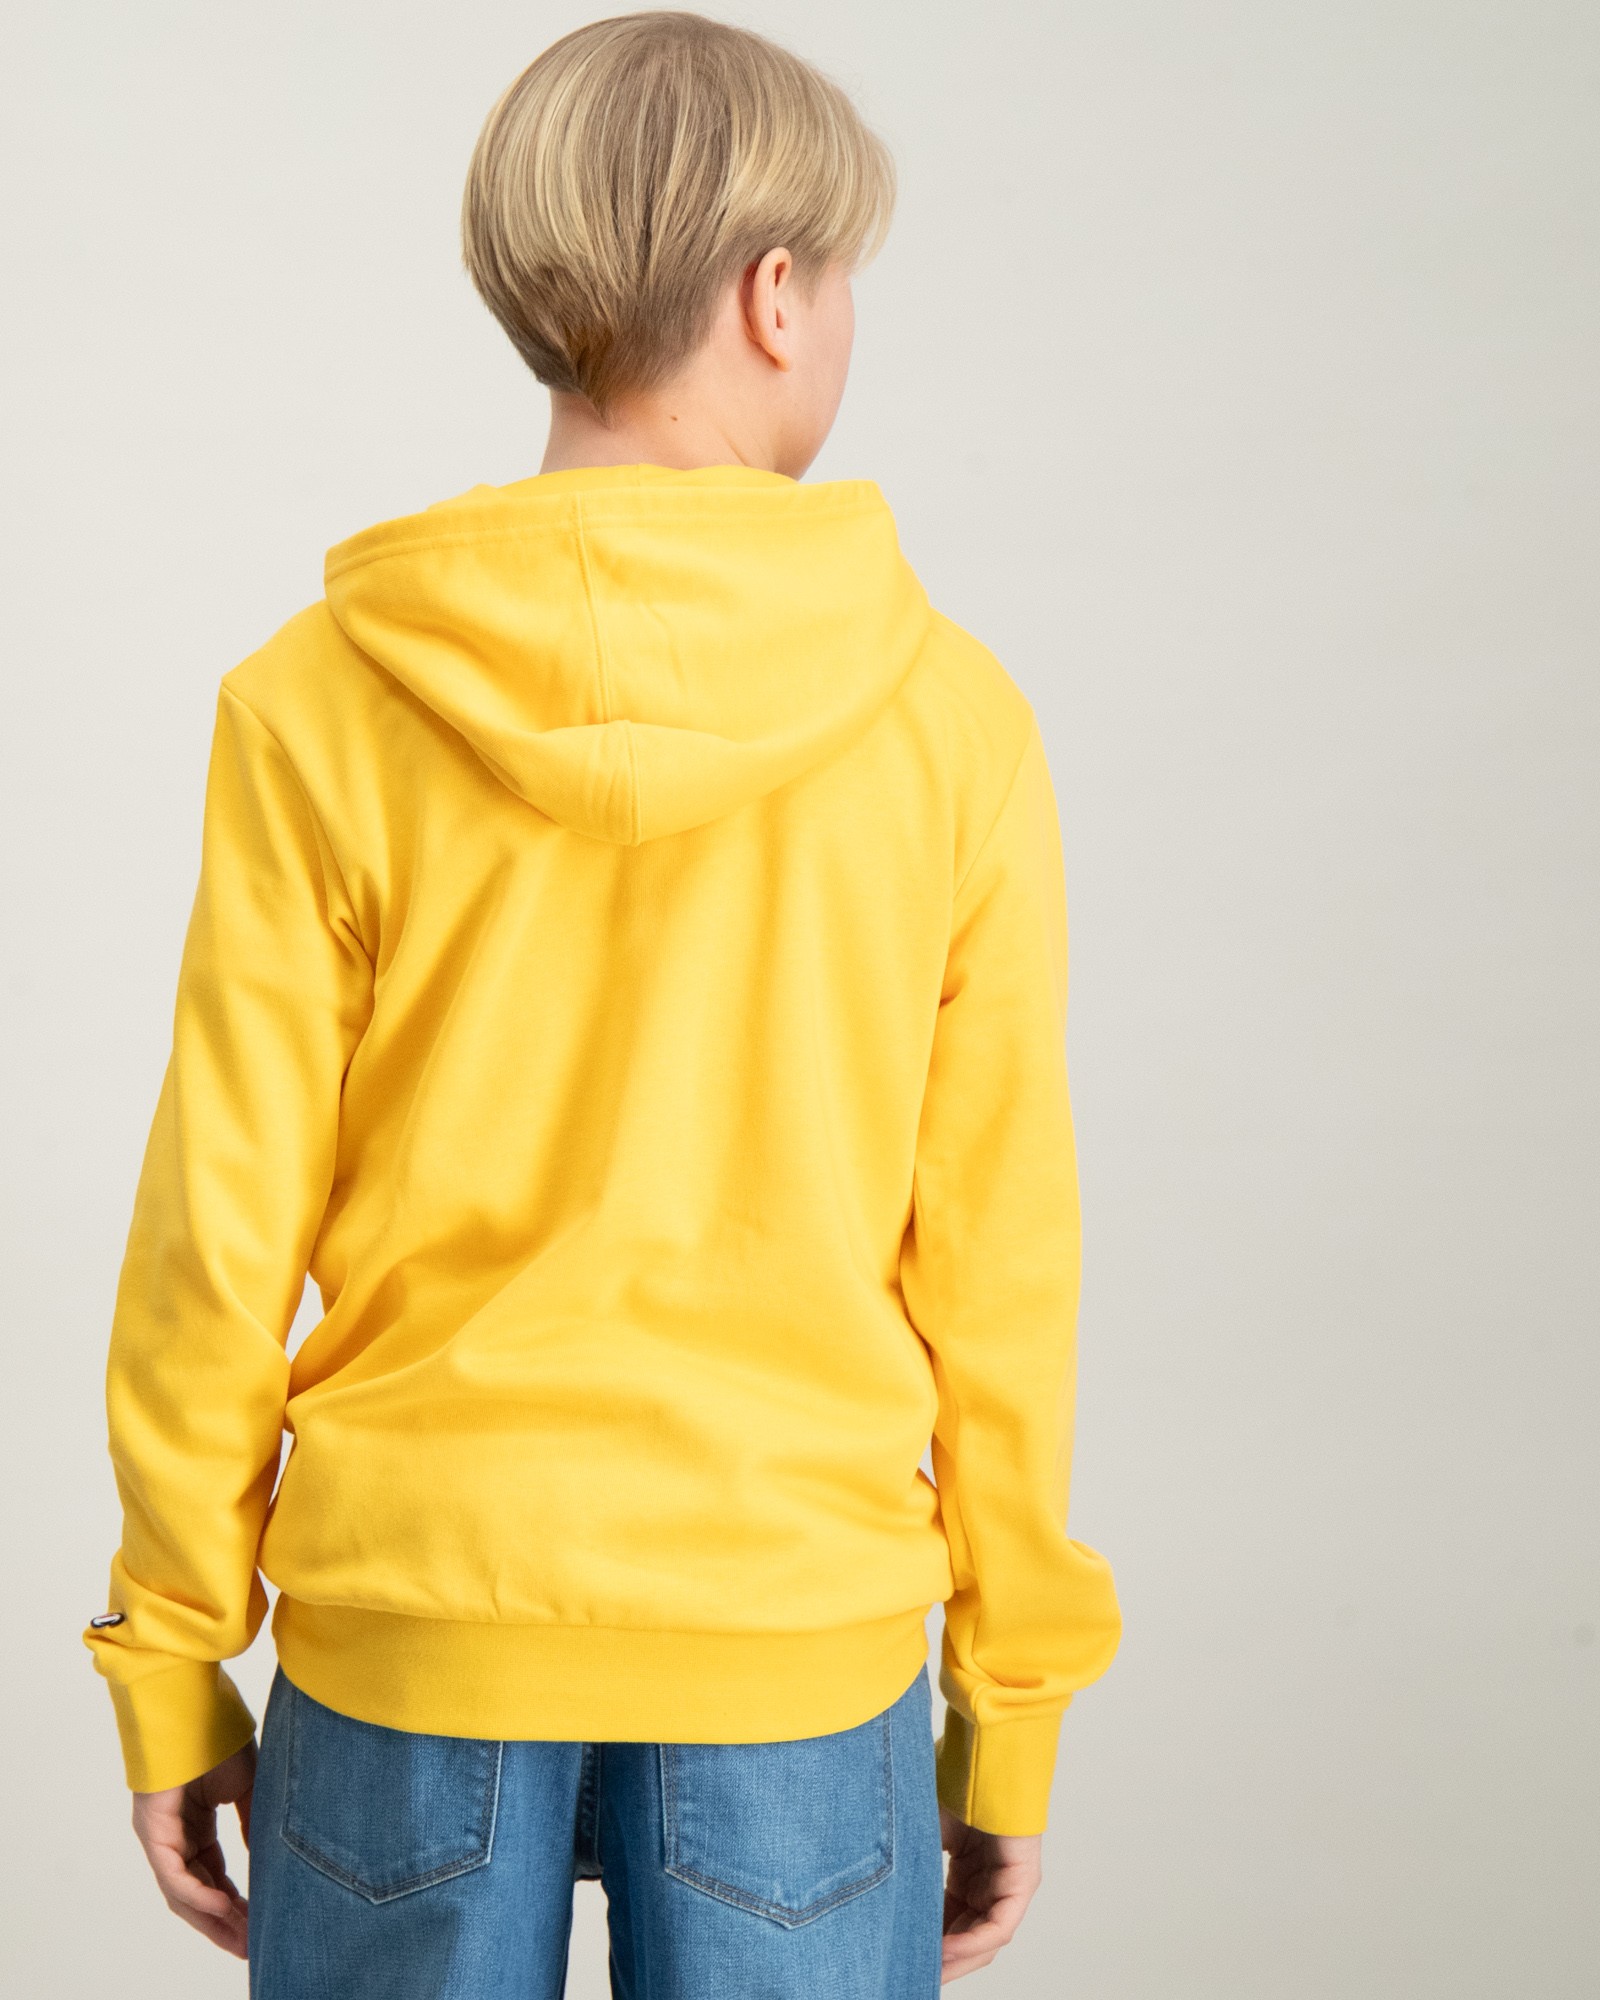 Gelb Hooded Sweatshirt für Kids Store Brand Jungen 